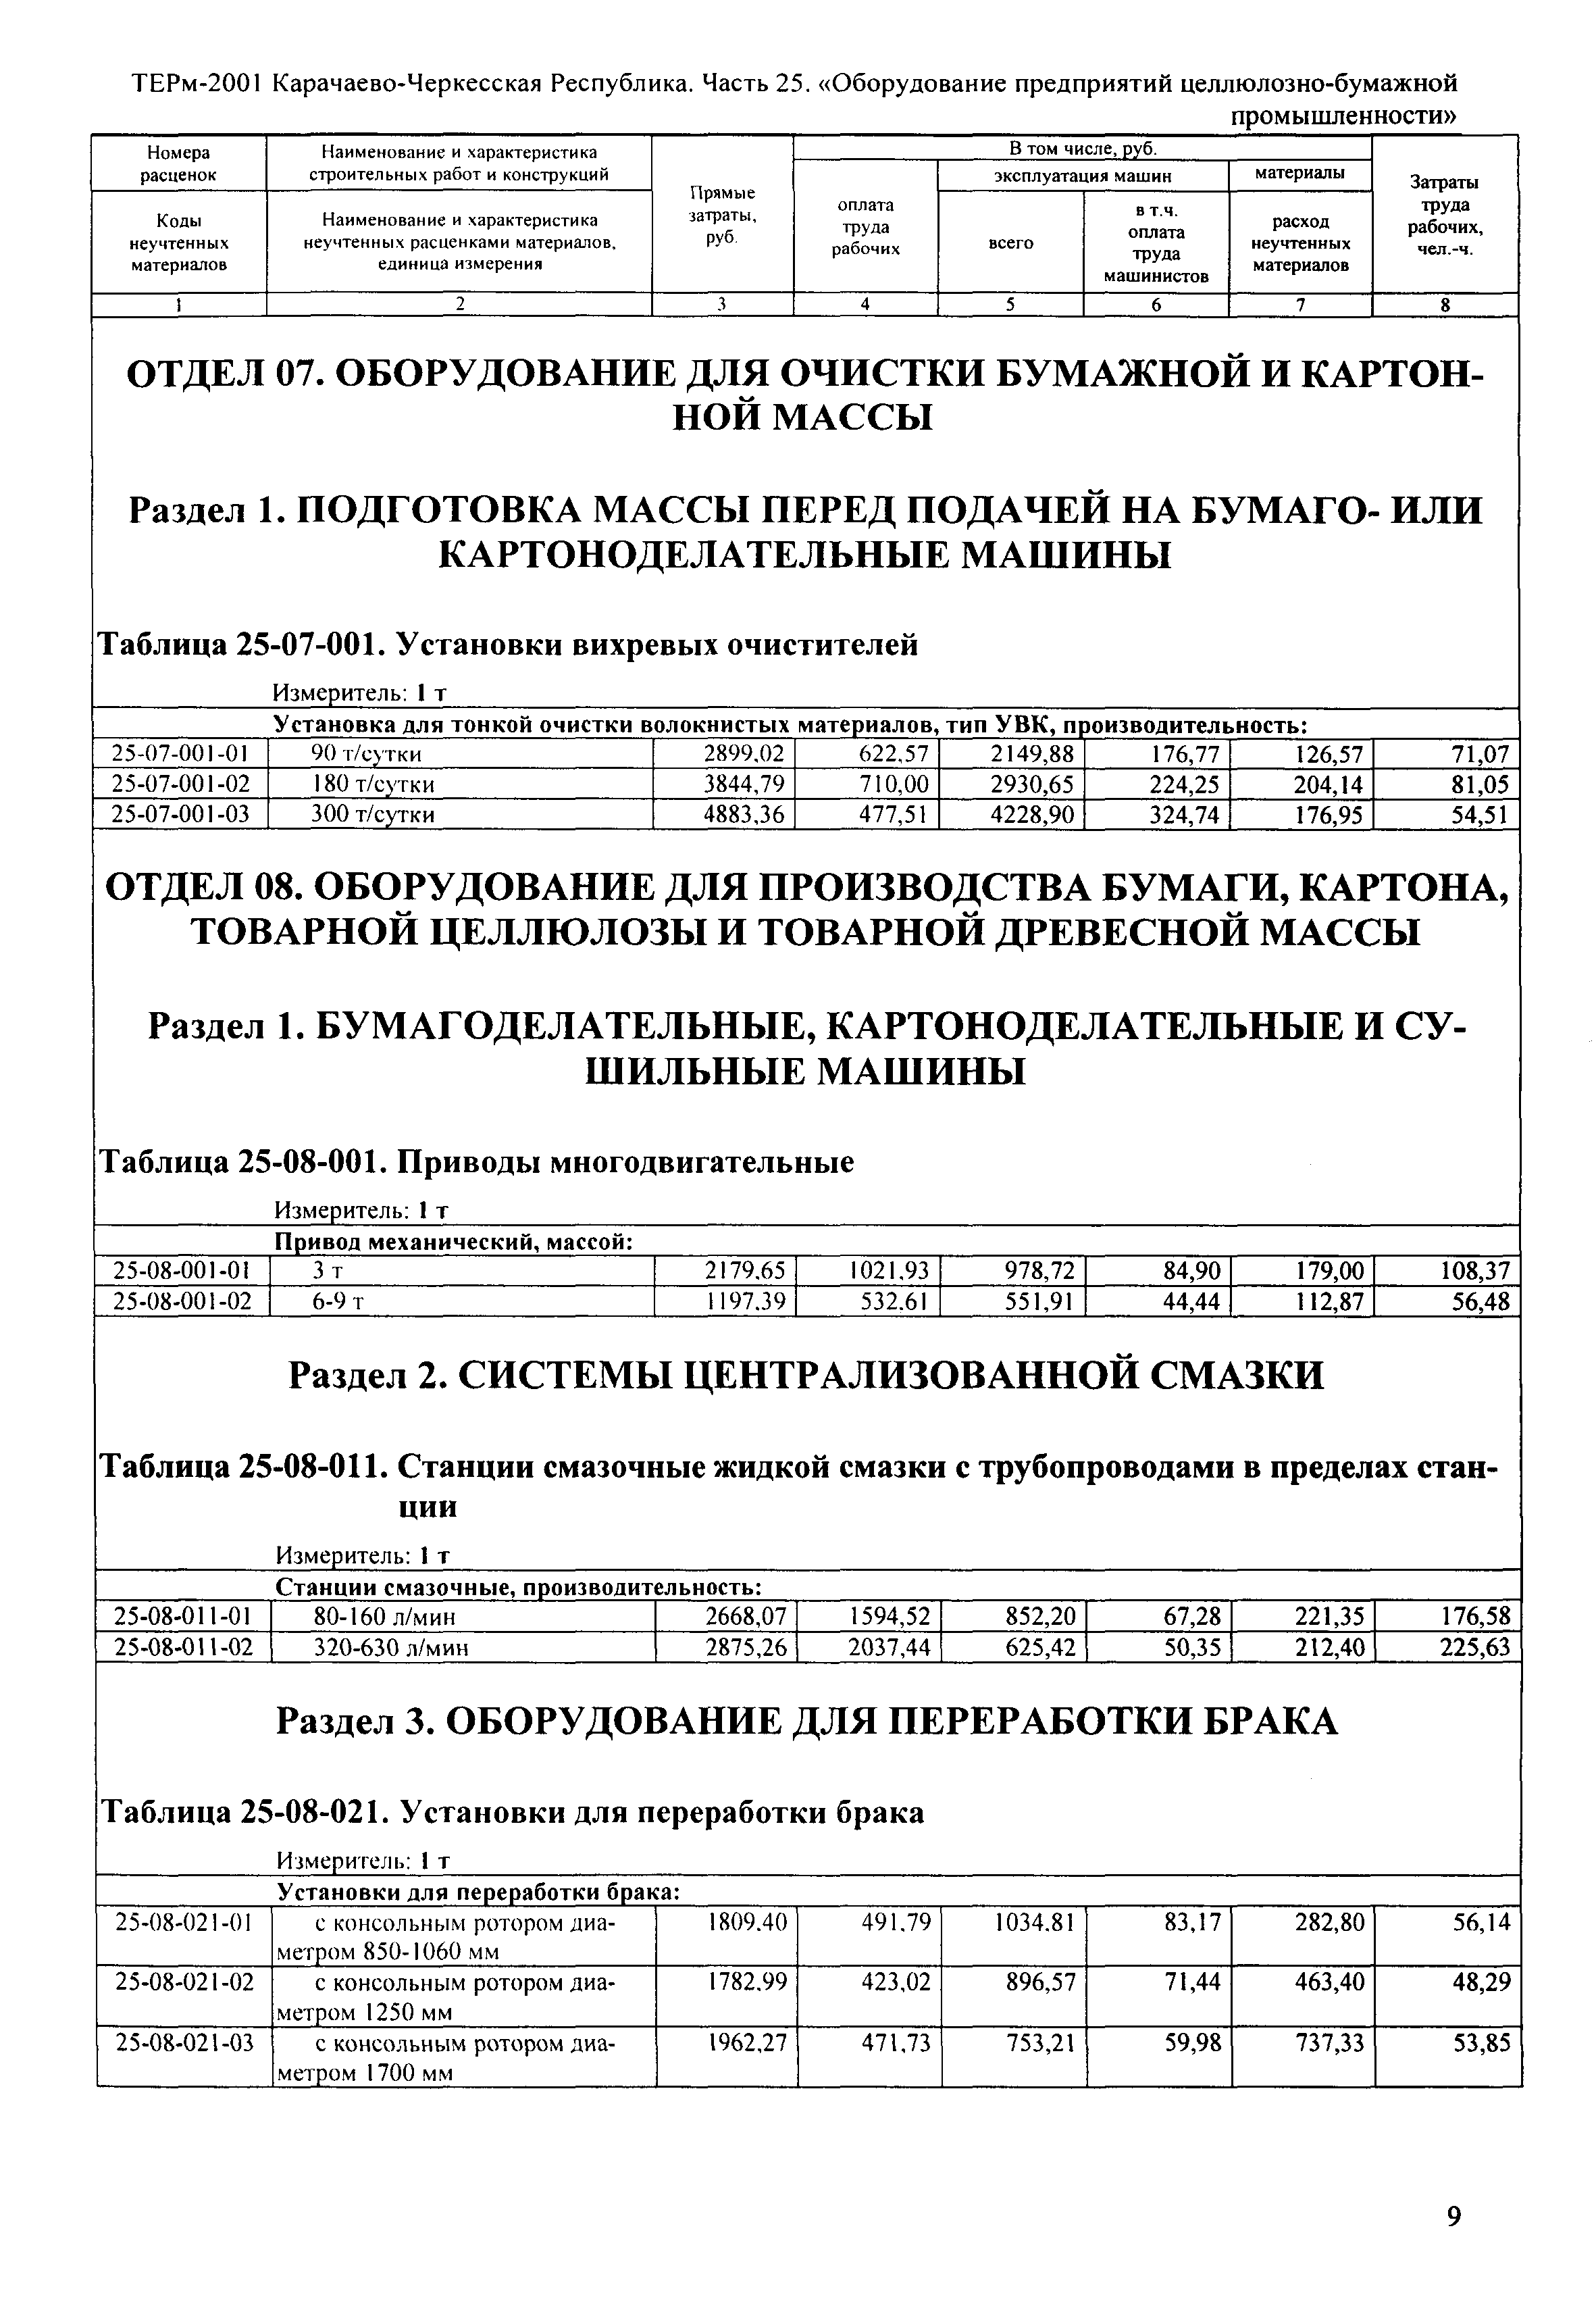 ТЕРм Карачаево-Черкесская Республика 25-2001